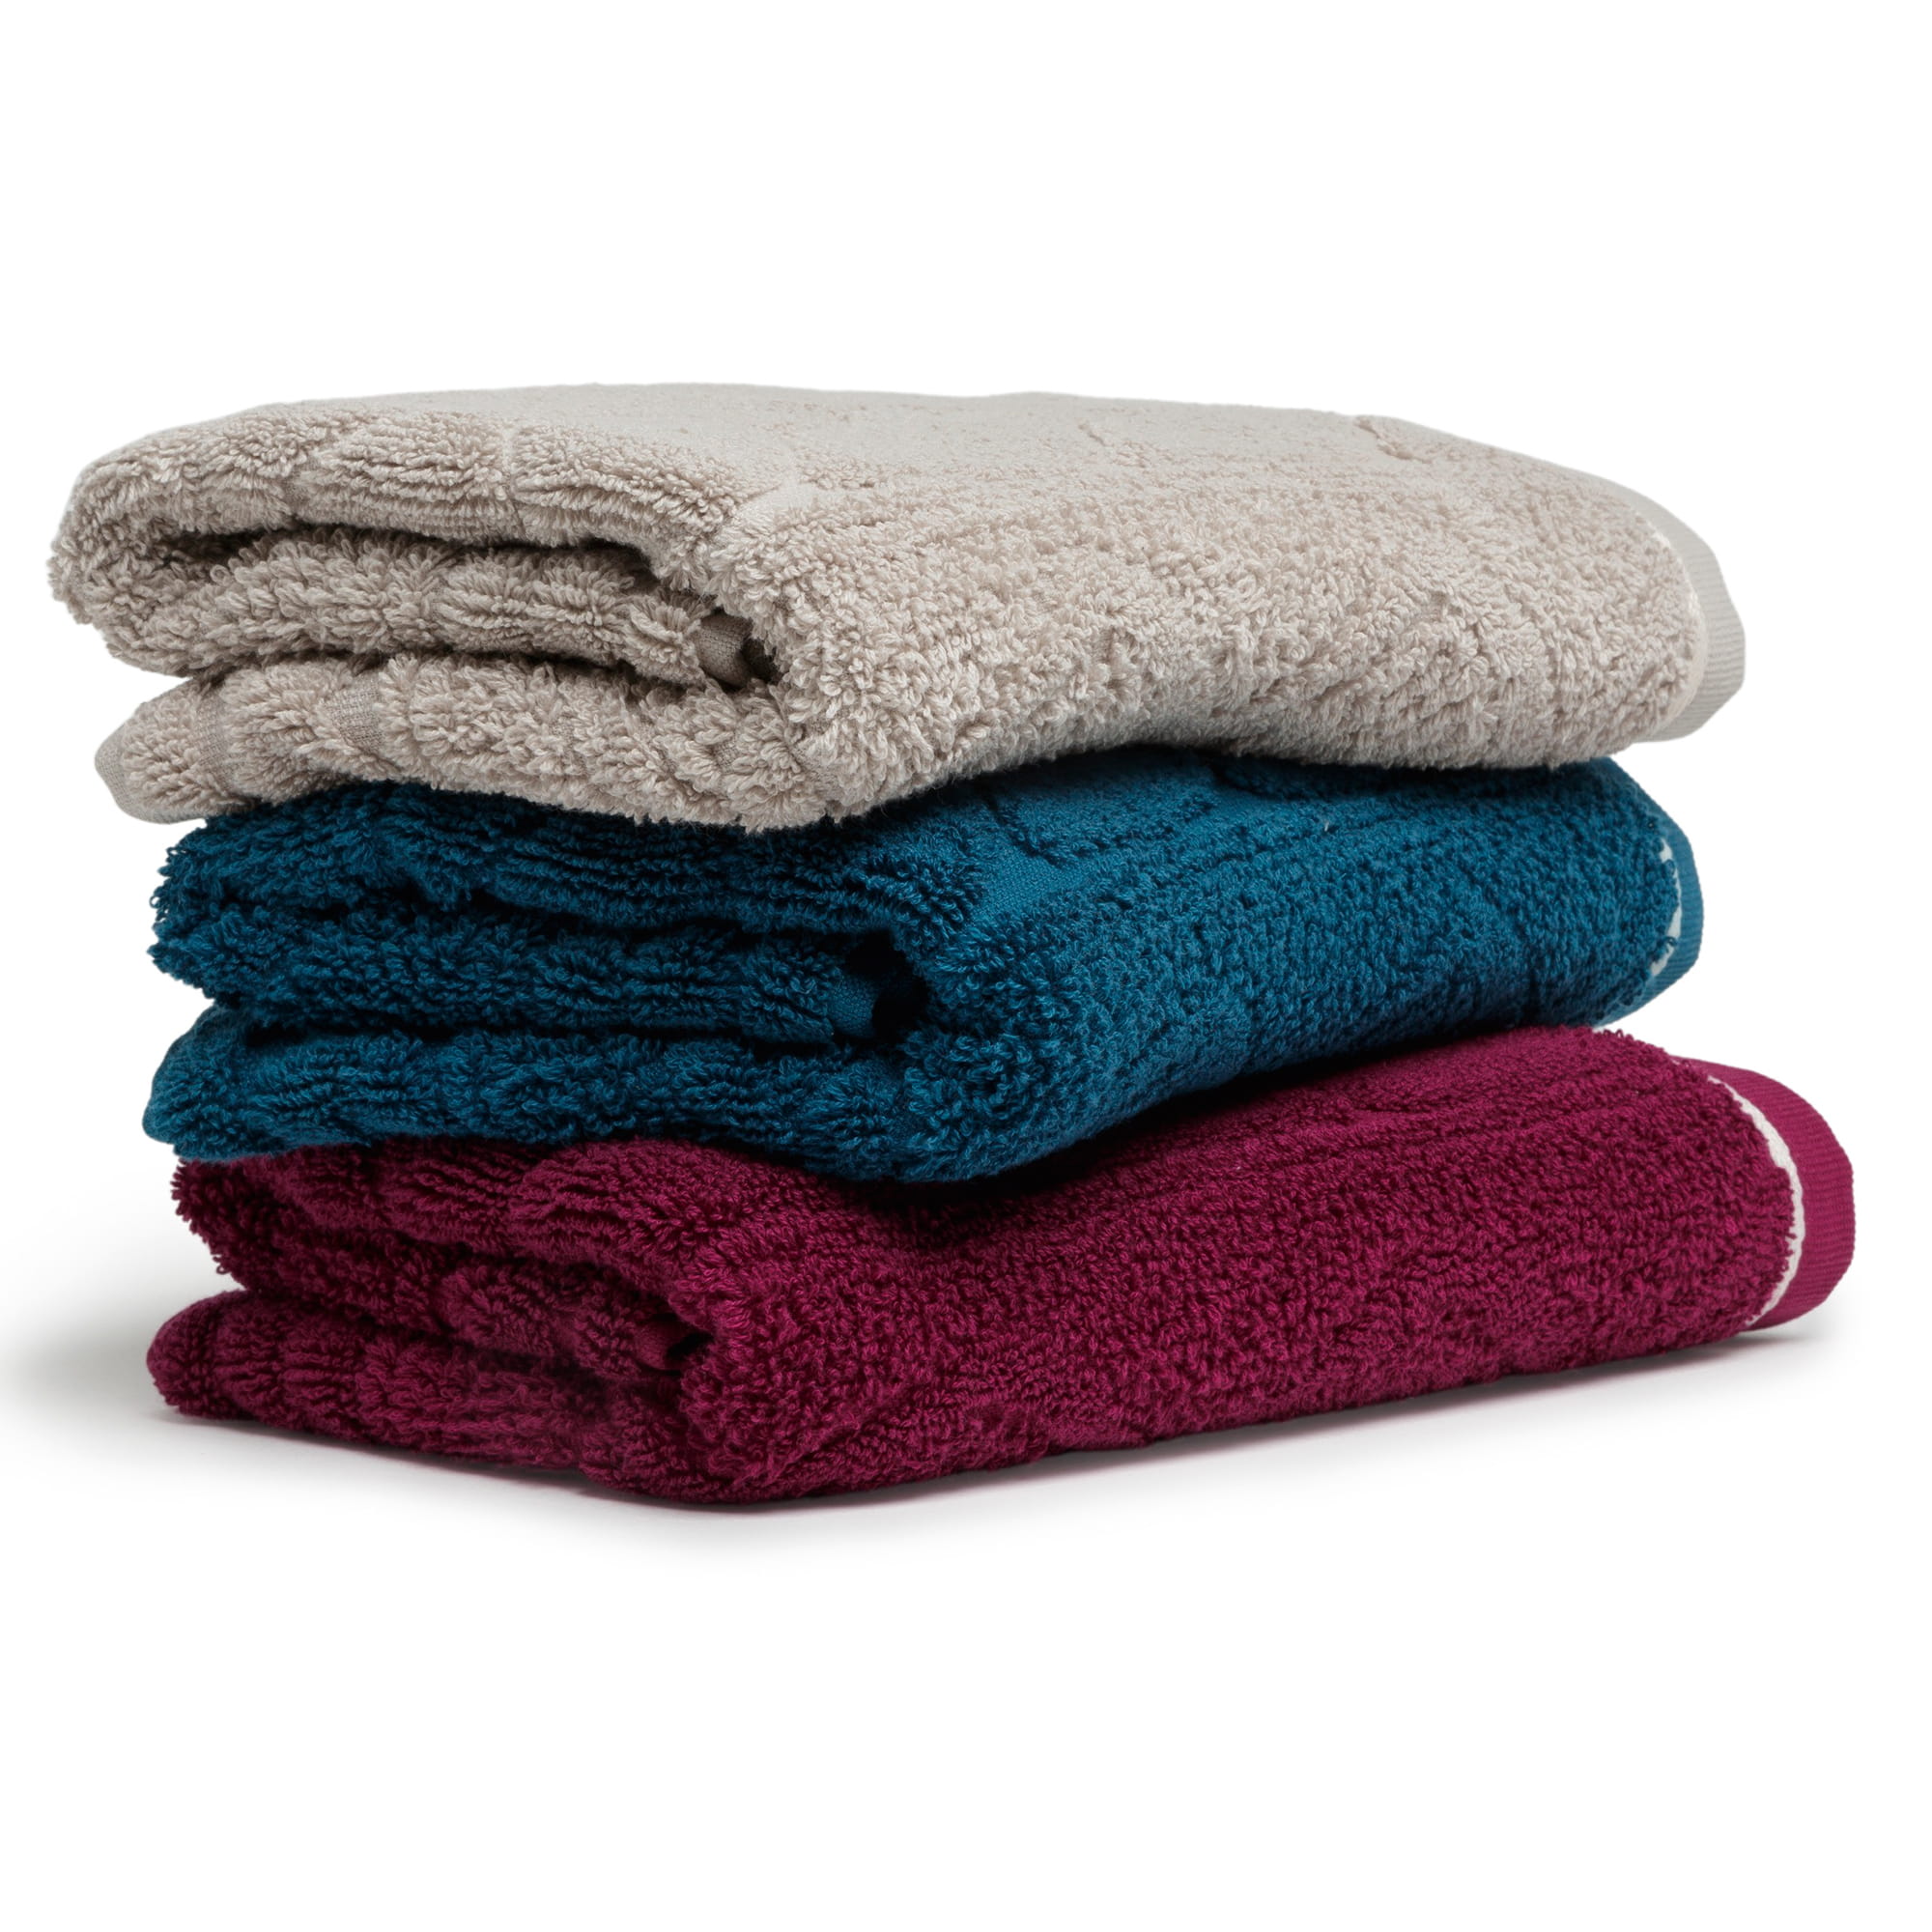 Möve Handtücher Cosy Knits Strick - Farbe: cashmere - 713 - Duschtuch  80x150 cm | Duschtuch | Handtücher | Badetücher